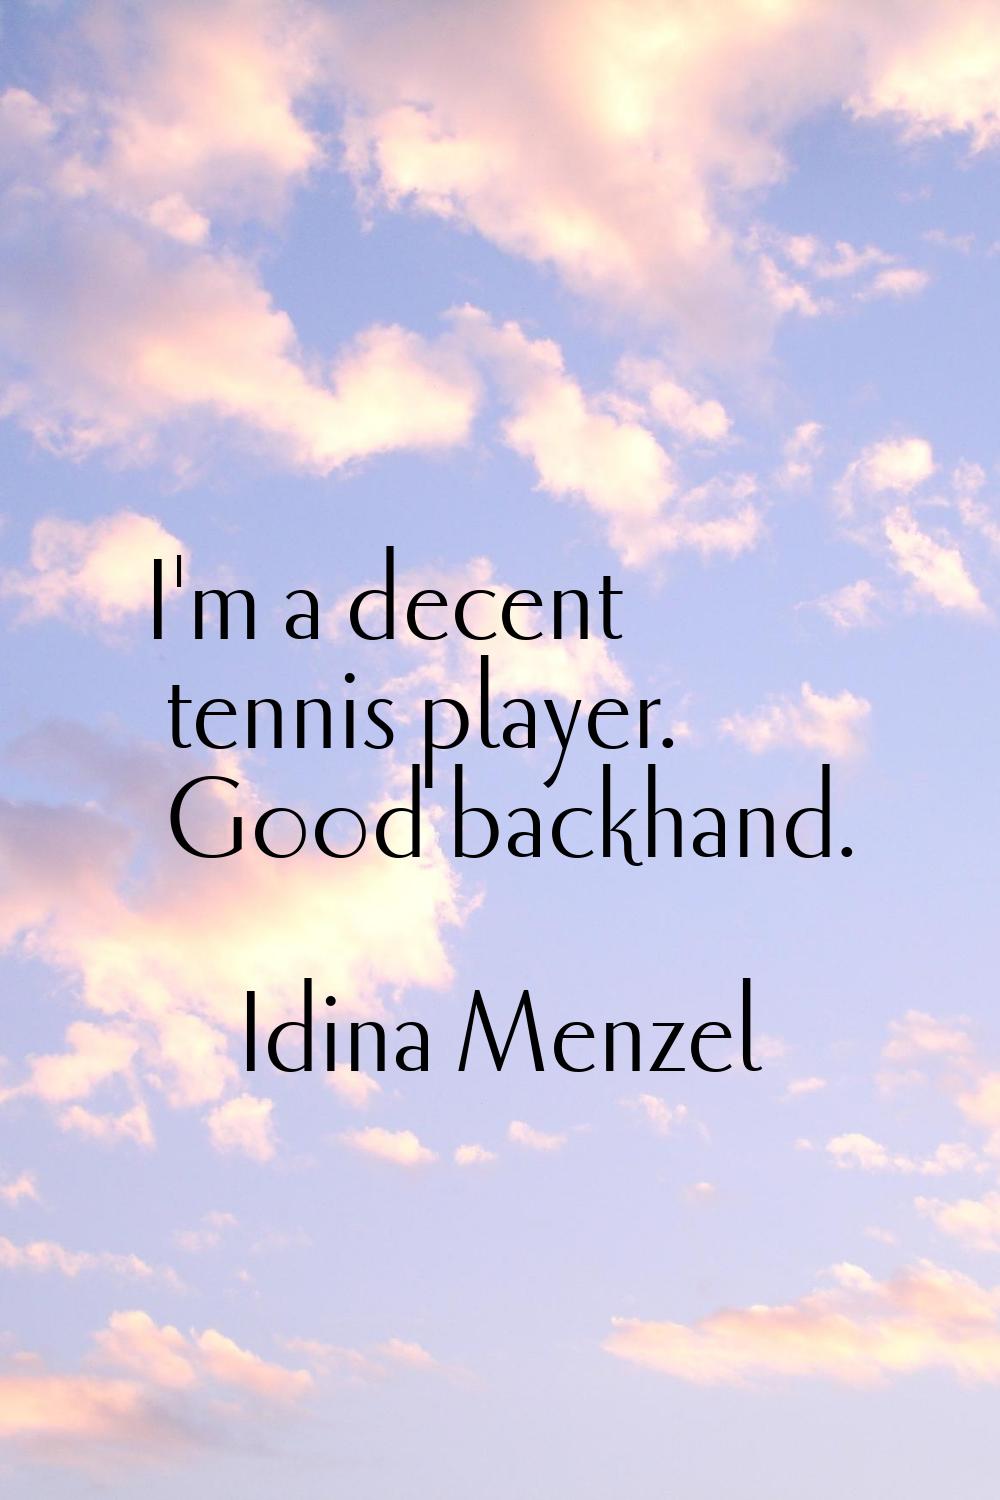 I'm a decent tennis player. Good backhand.